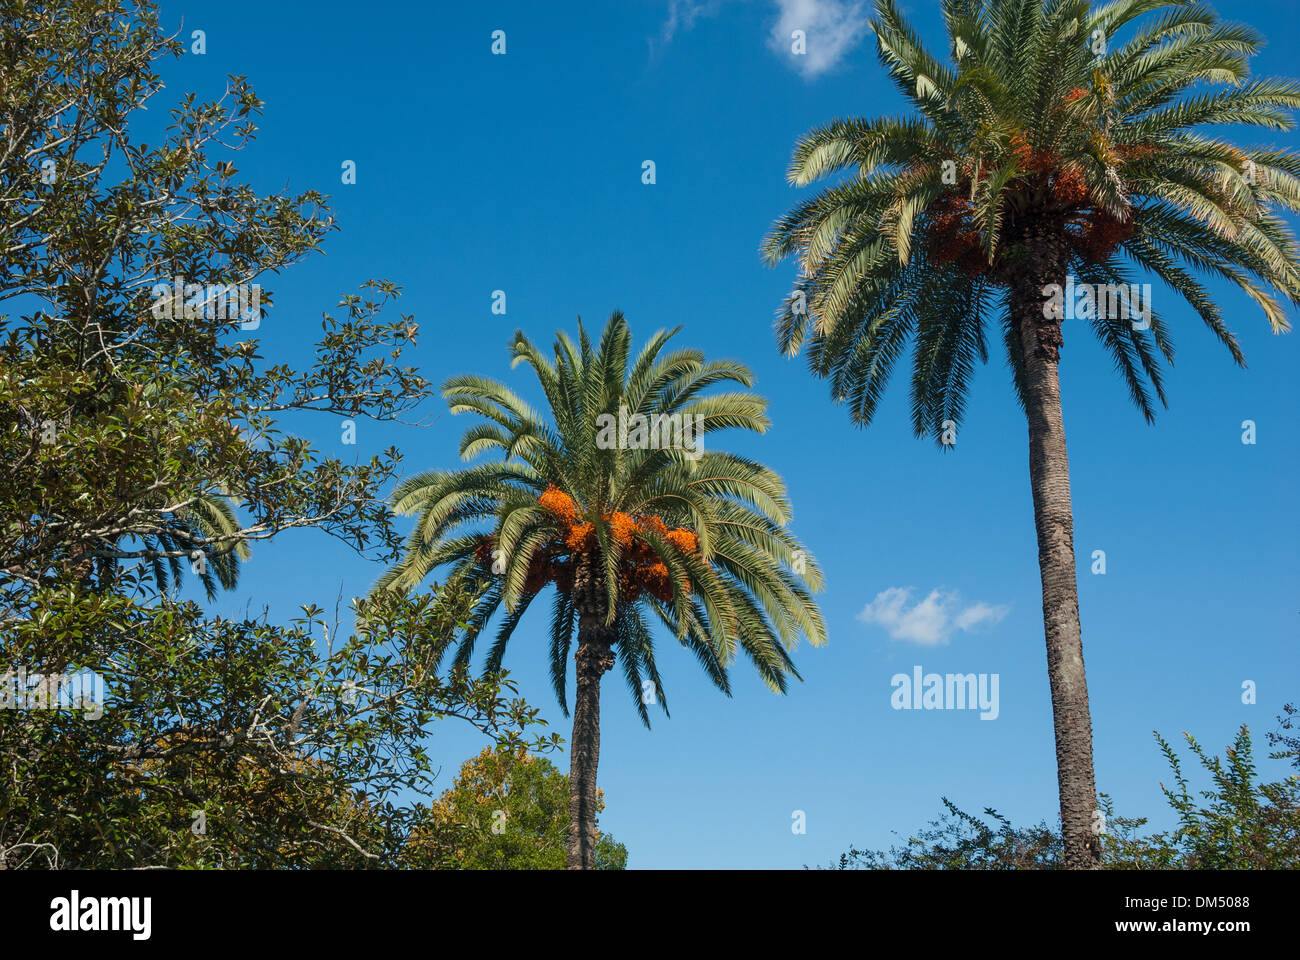 Les majestueux palmiers dattiers de Canary Island s'élèvent sous un ciel bleu profond sur le campus de l'université d'État de Floride à Tallahassee, Floride. (ÉTATS-UNIS) Banque D'Images